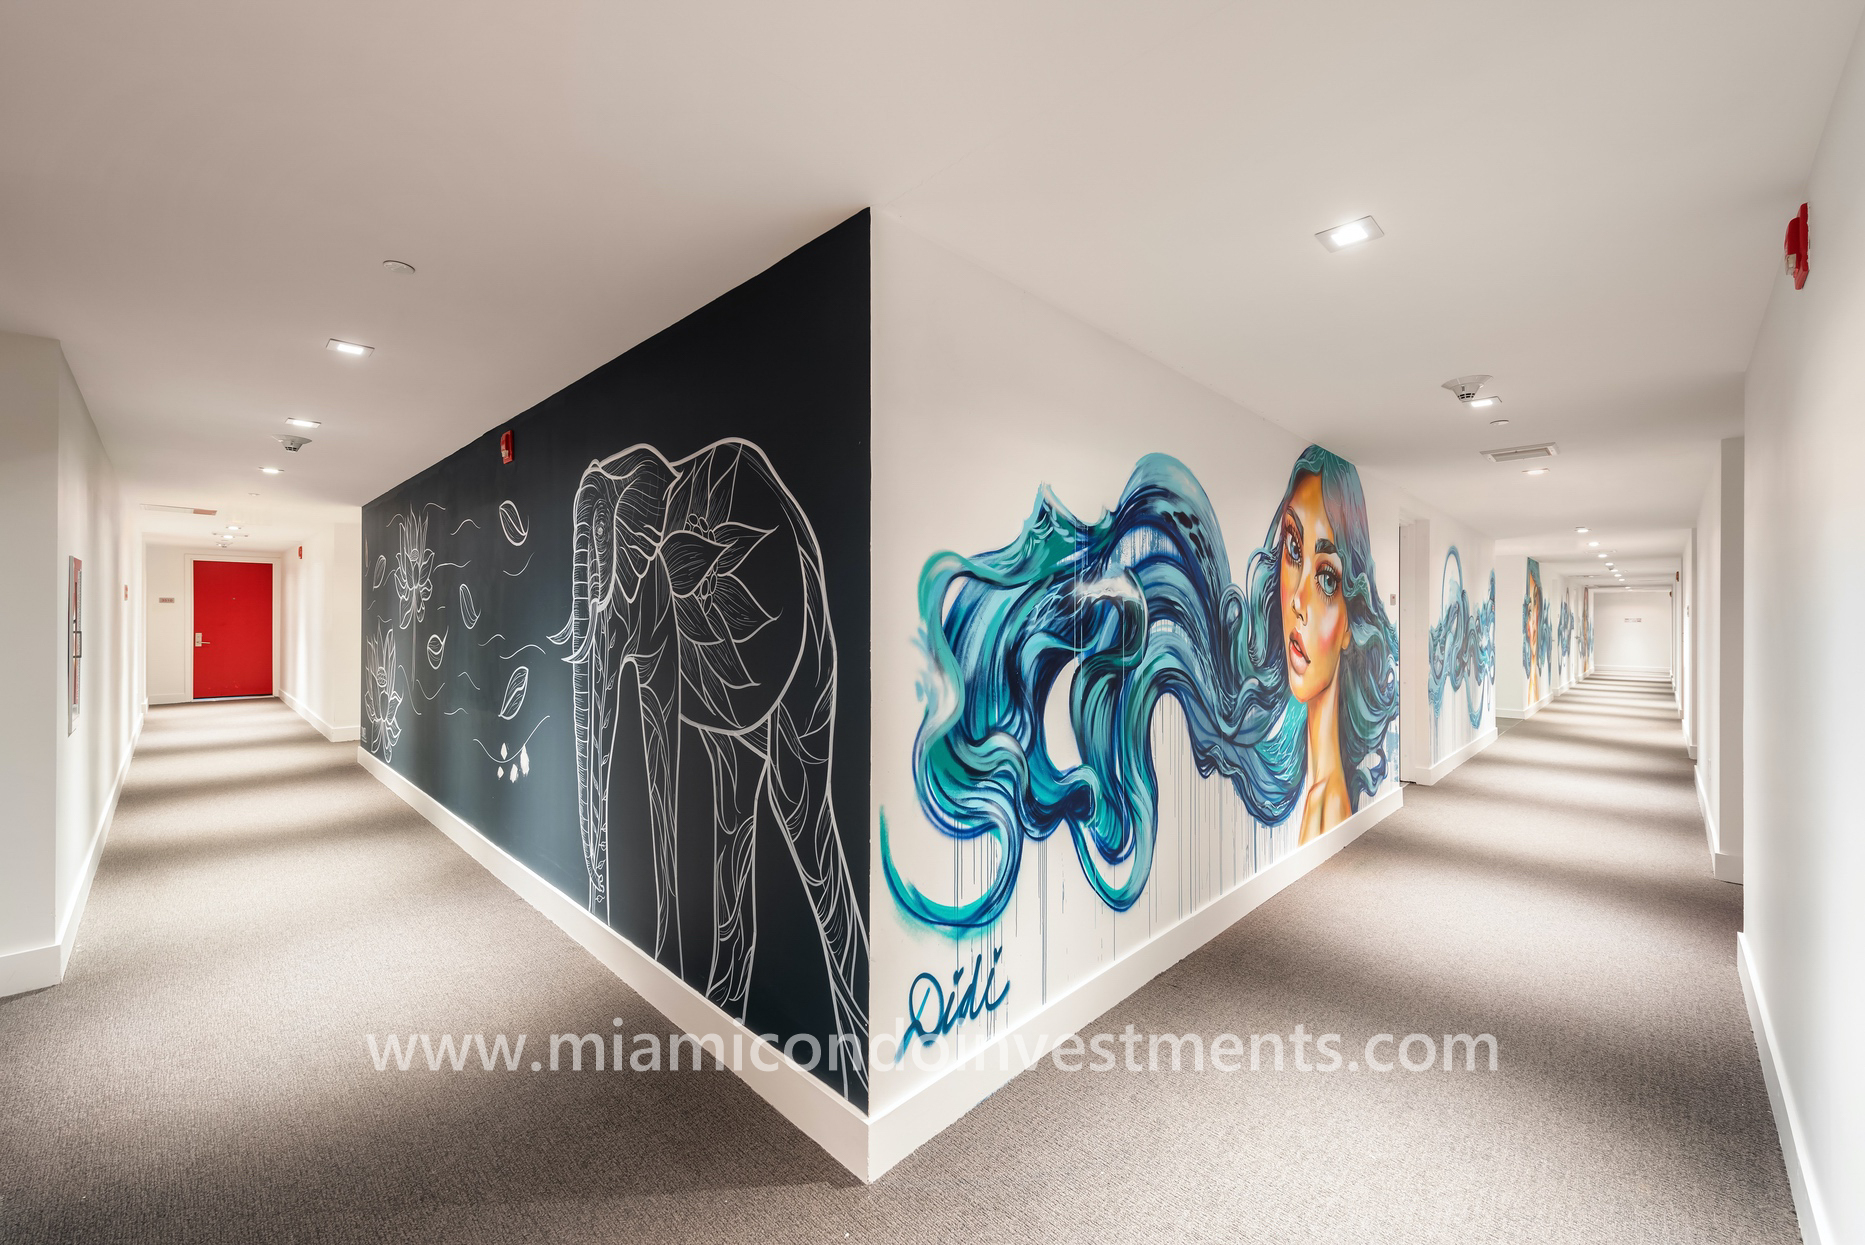 Canvas hallway mural by Didi